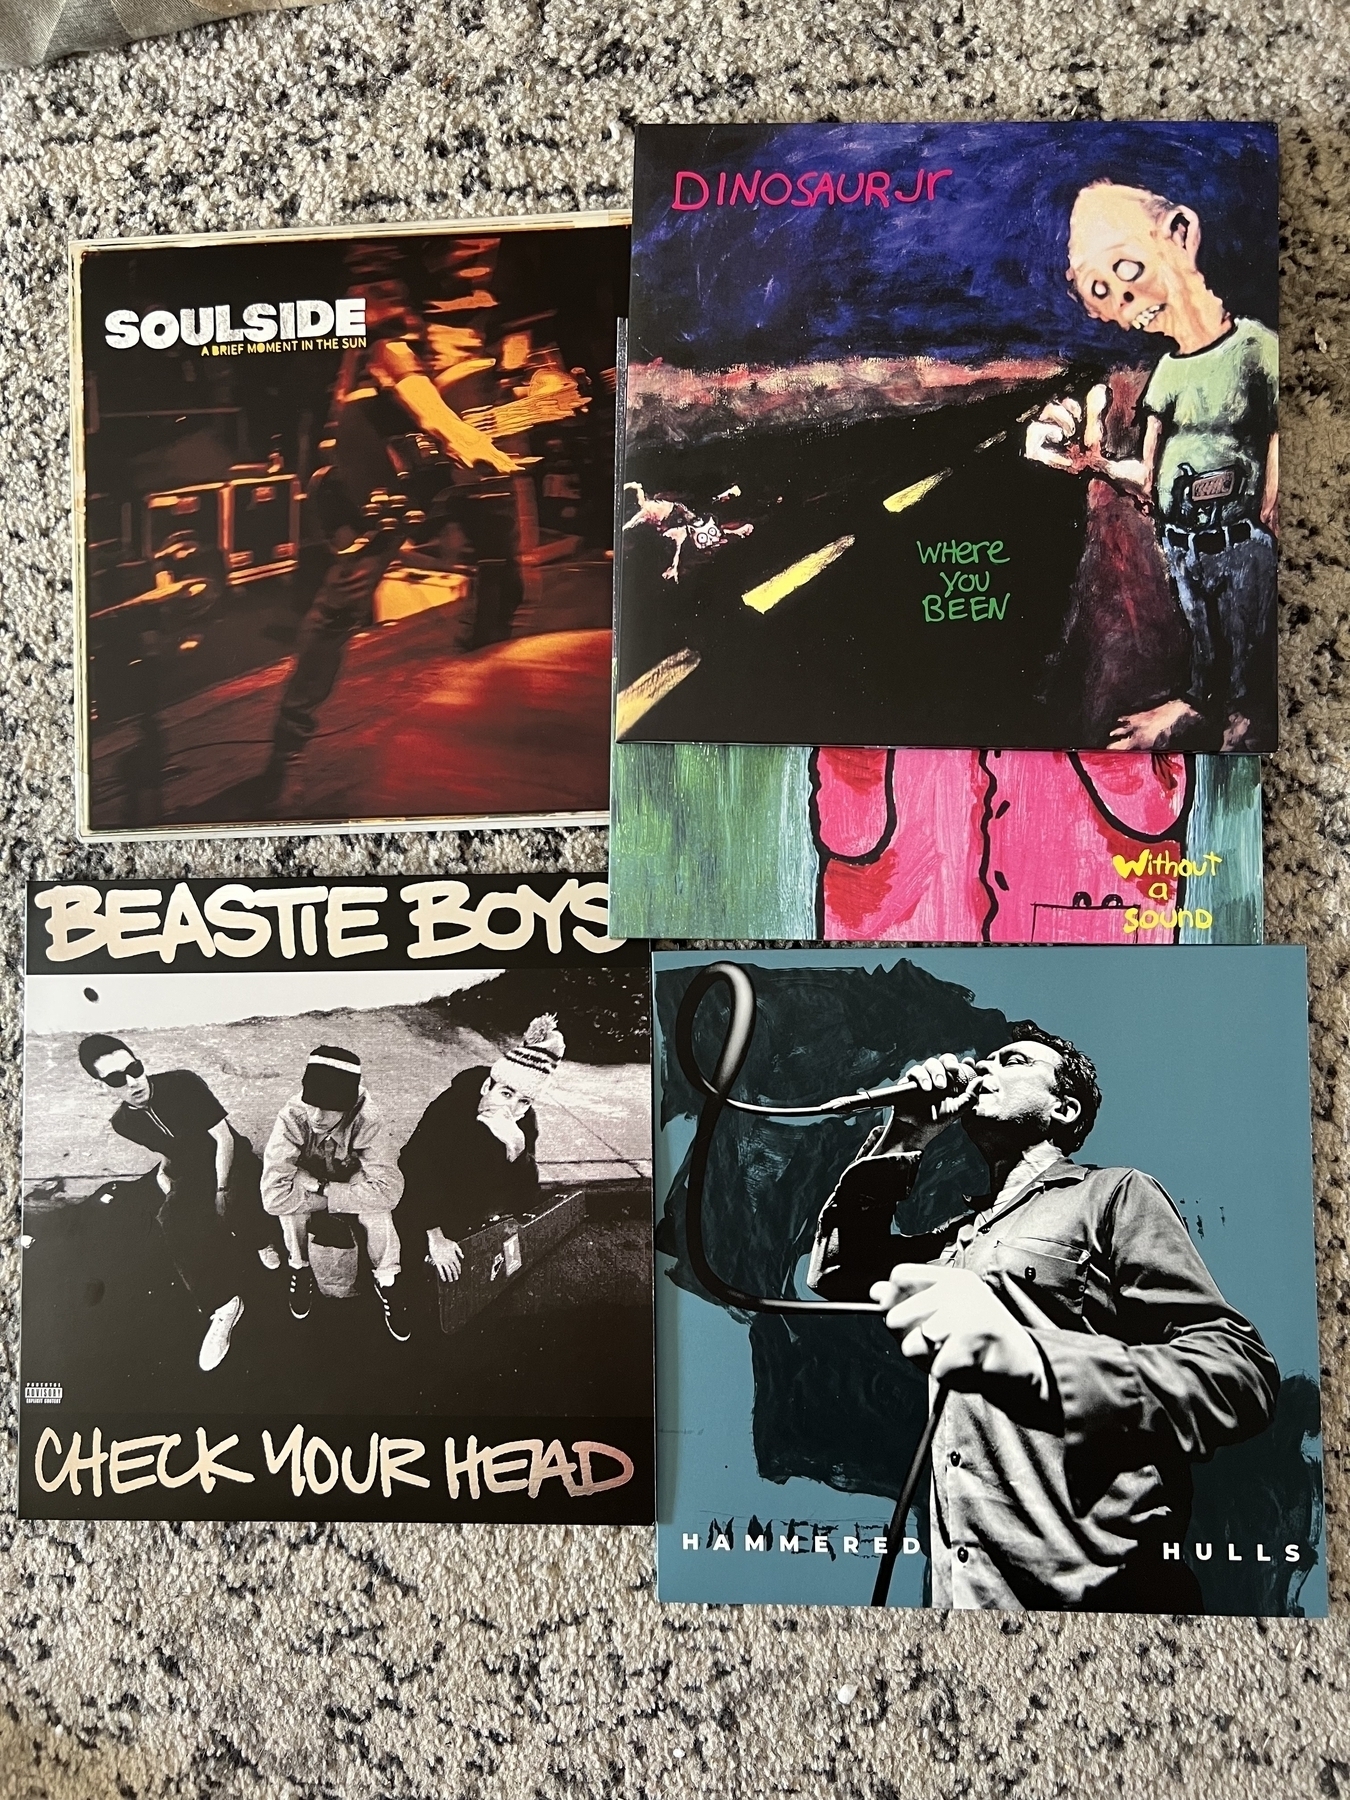 New vinyl: Soulside, Dinosaur Jr, Beastie Boys, Hammered Hulls 